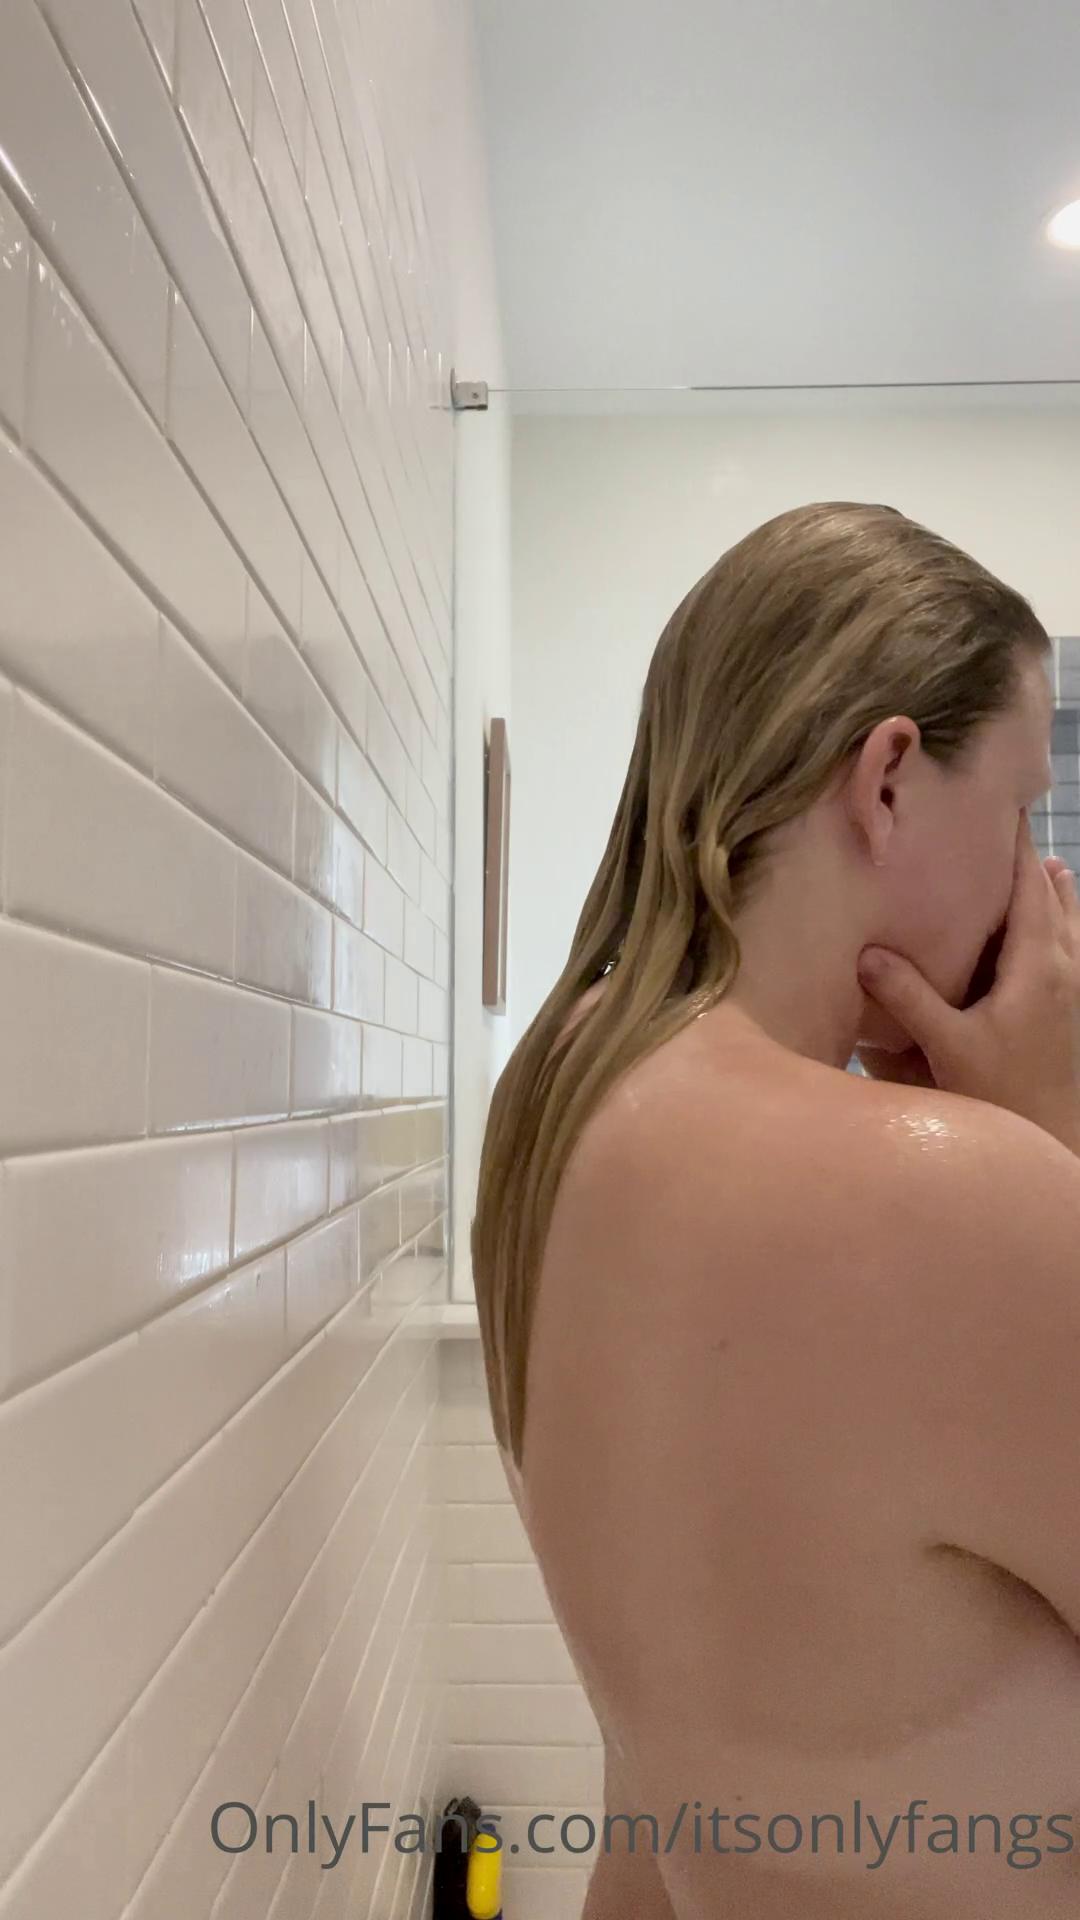 fangs nude shower onlyfans video leaked LIJSWL